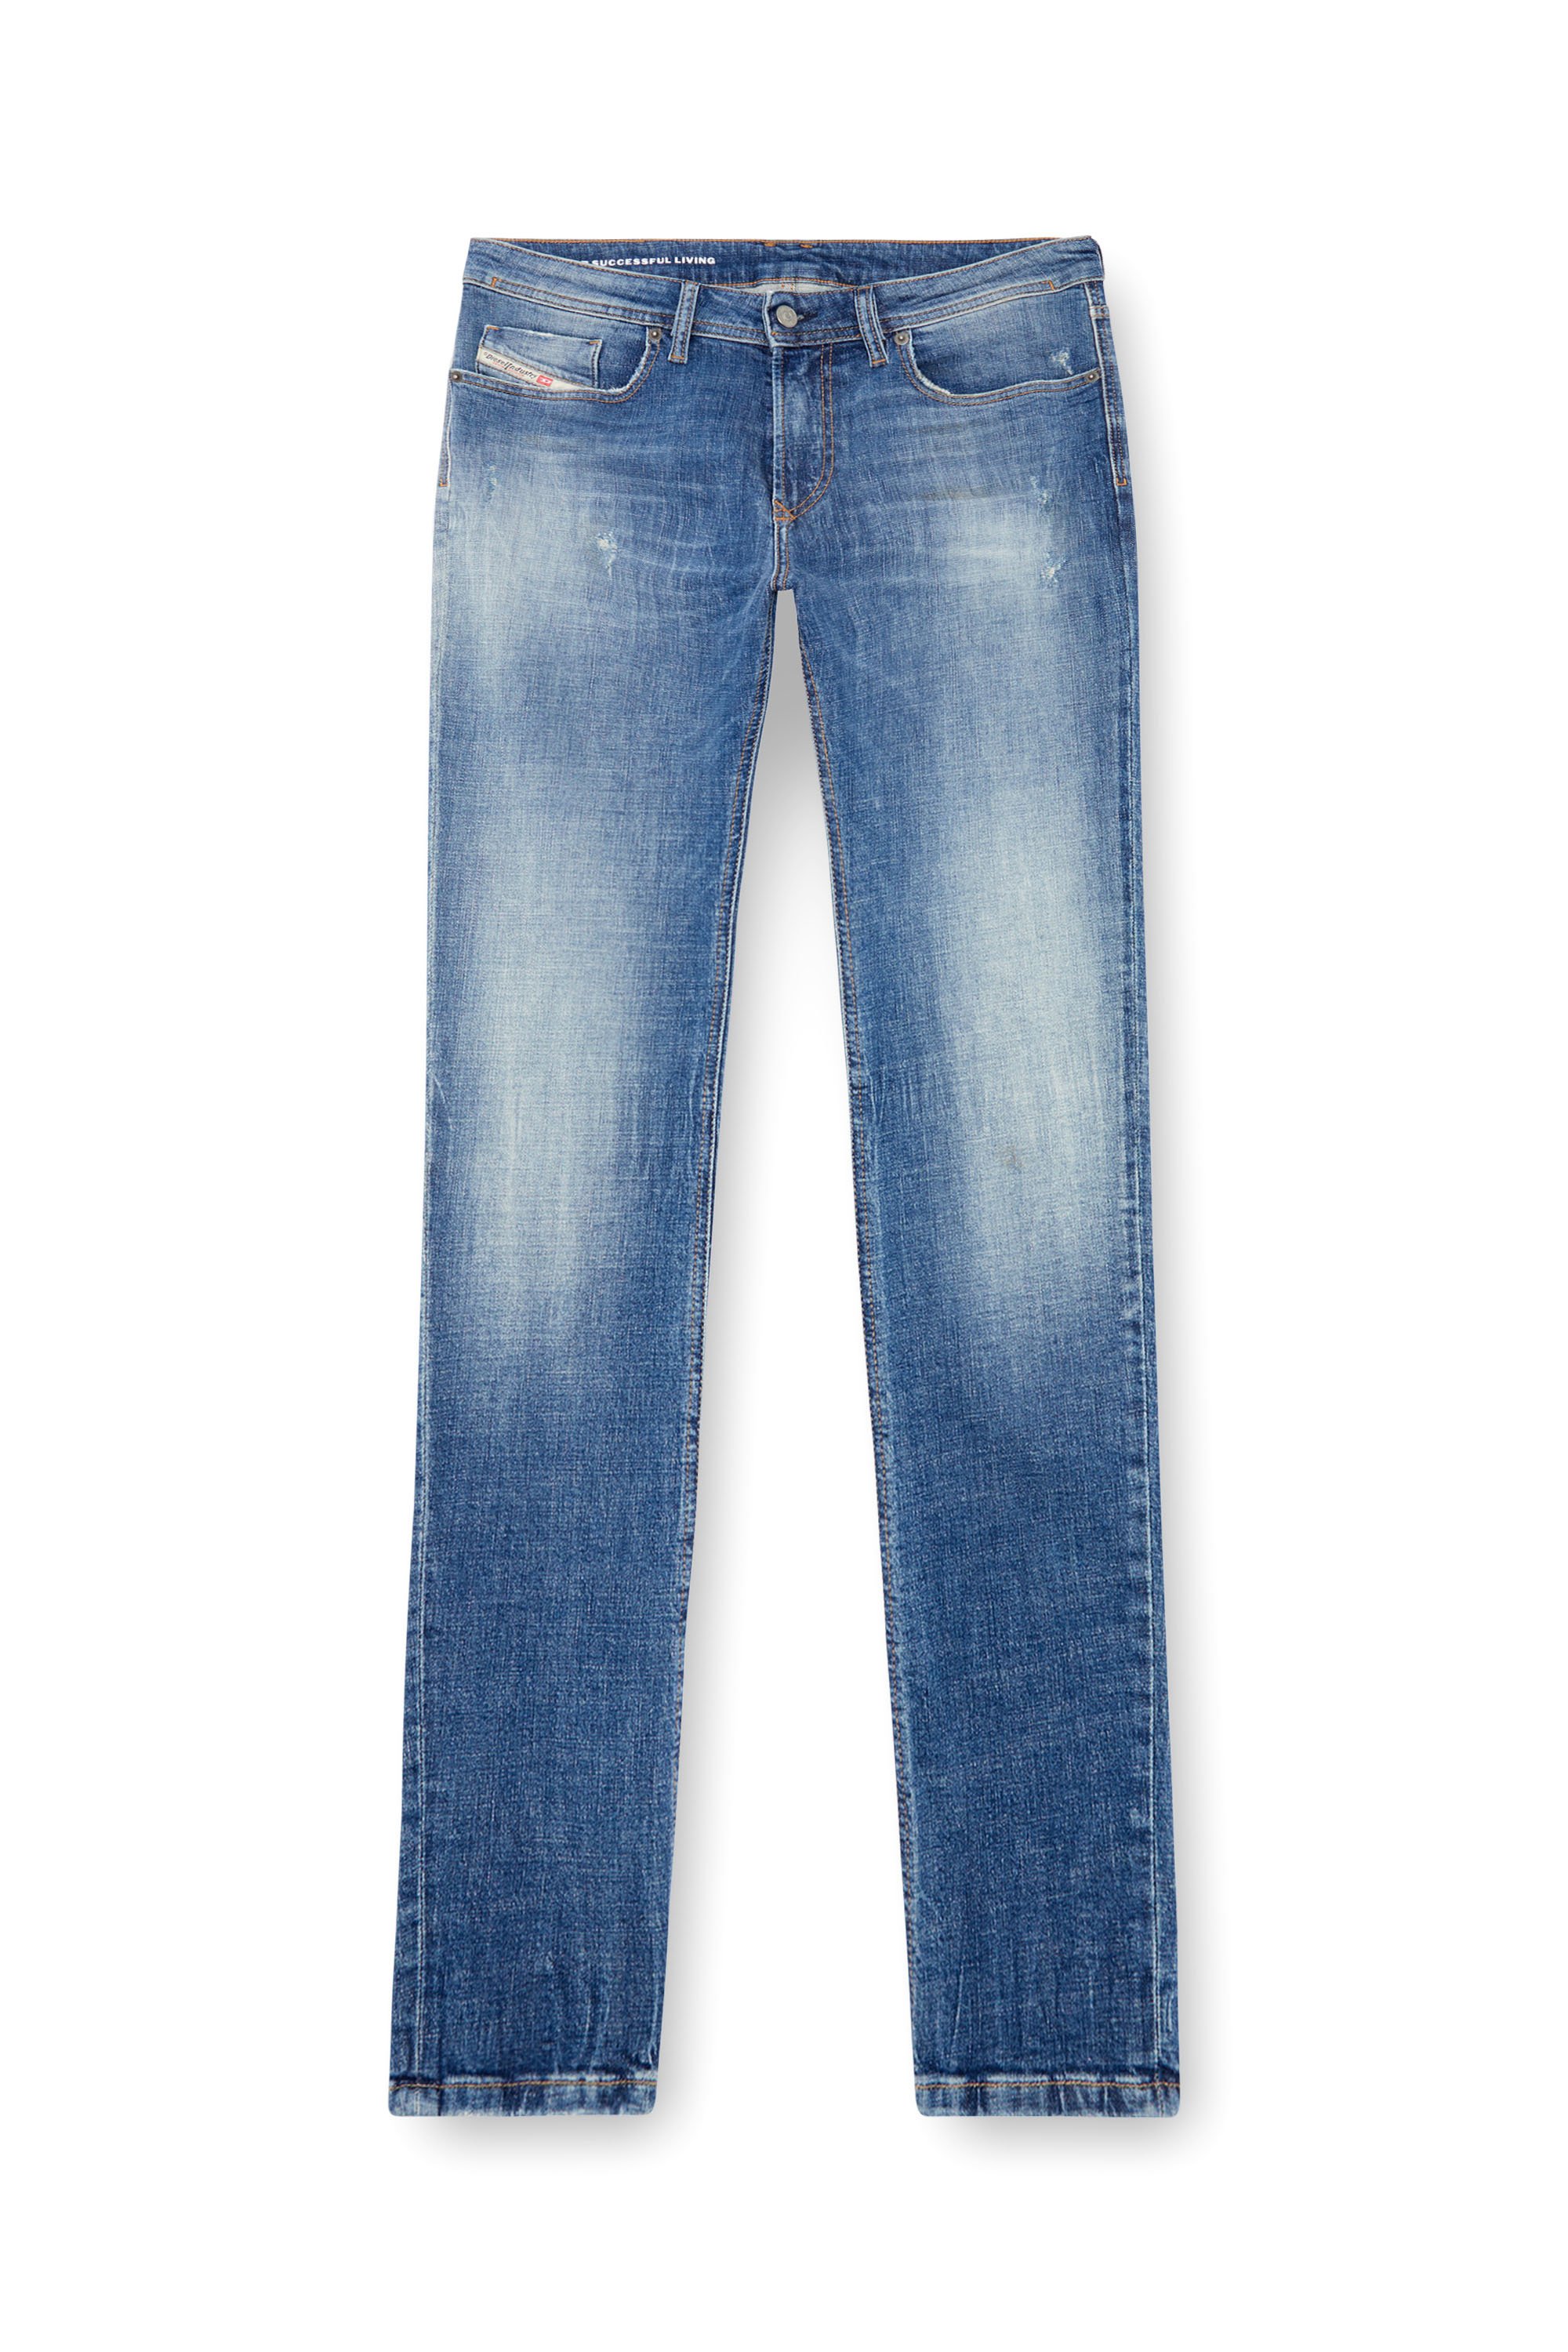 Diesel - Man Skinny Jeans 1979 Sleenker 0GRDF, Medium blue - Image 5